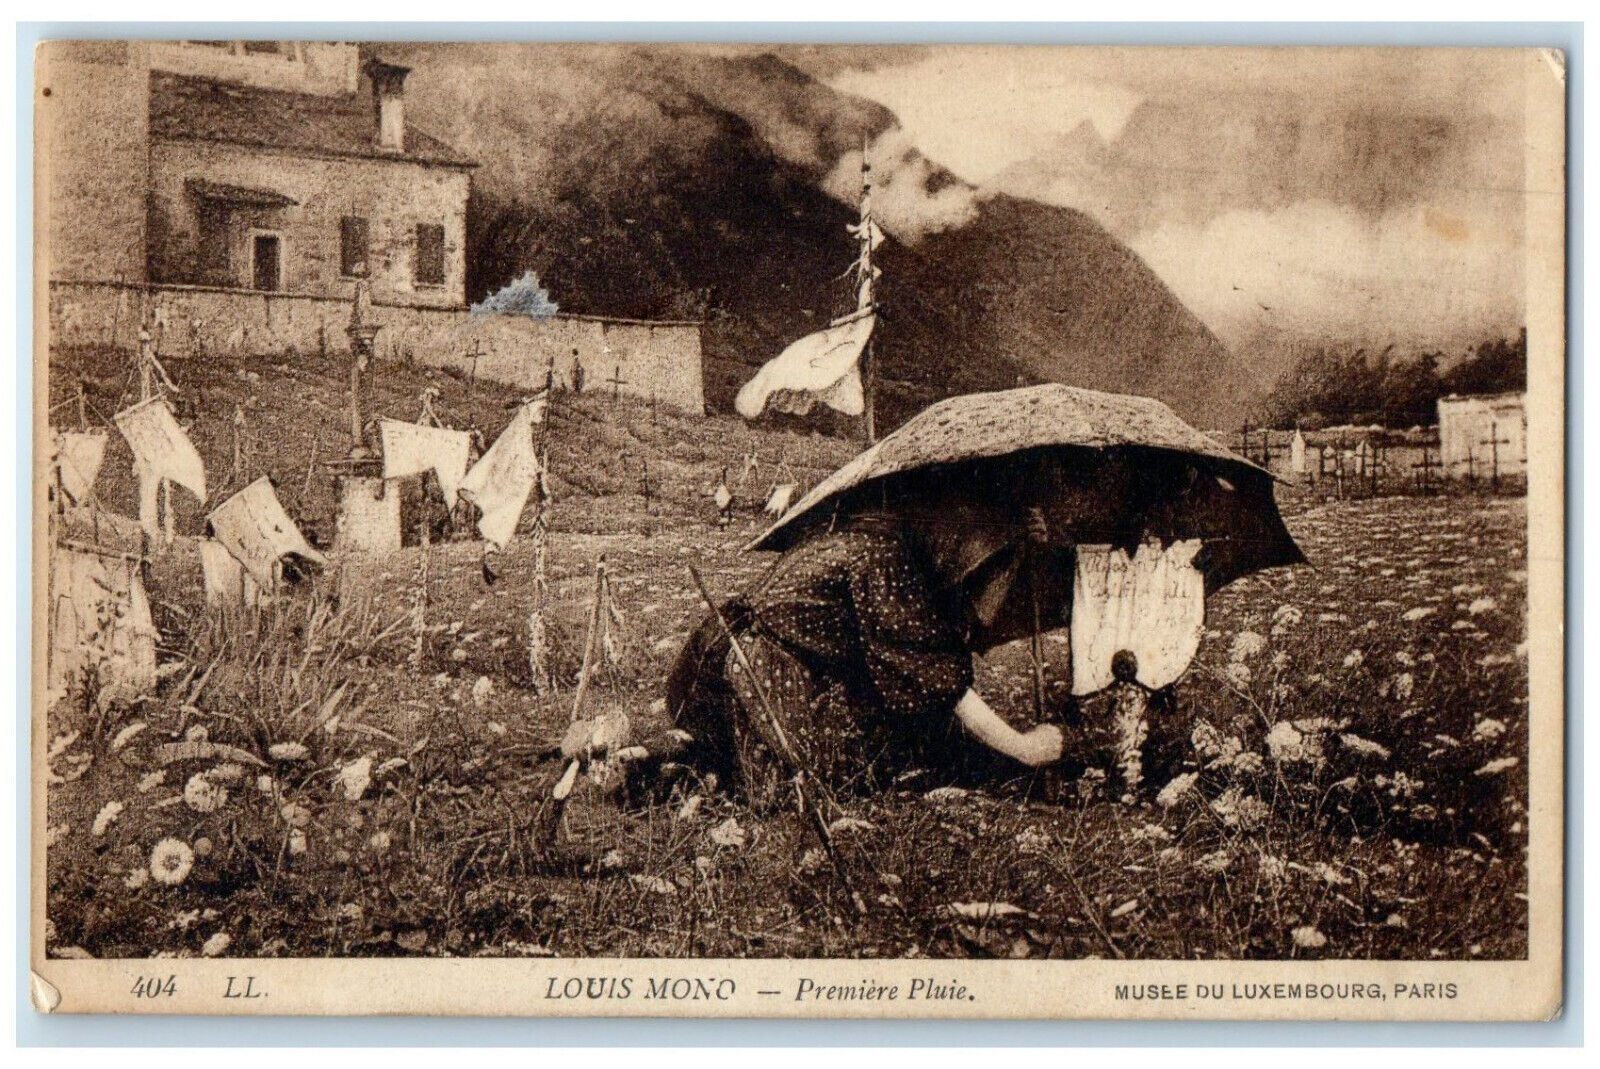 1924 Premiere Rain Louis Mono Musee Du Luxembourg Paris France Postcard